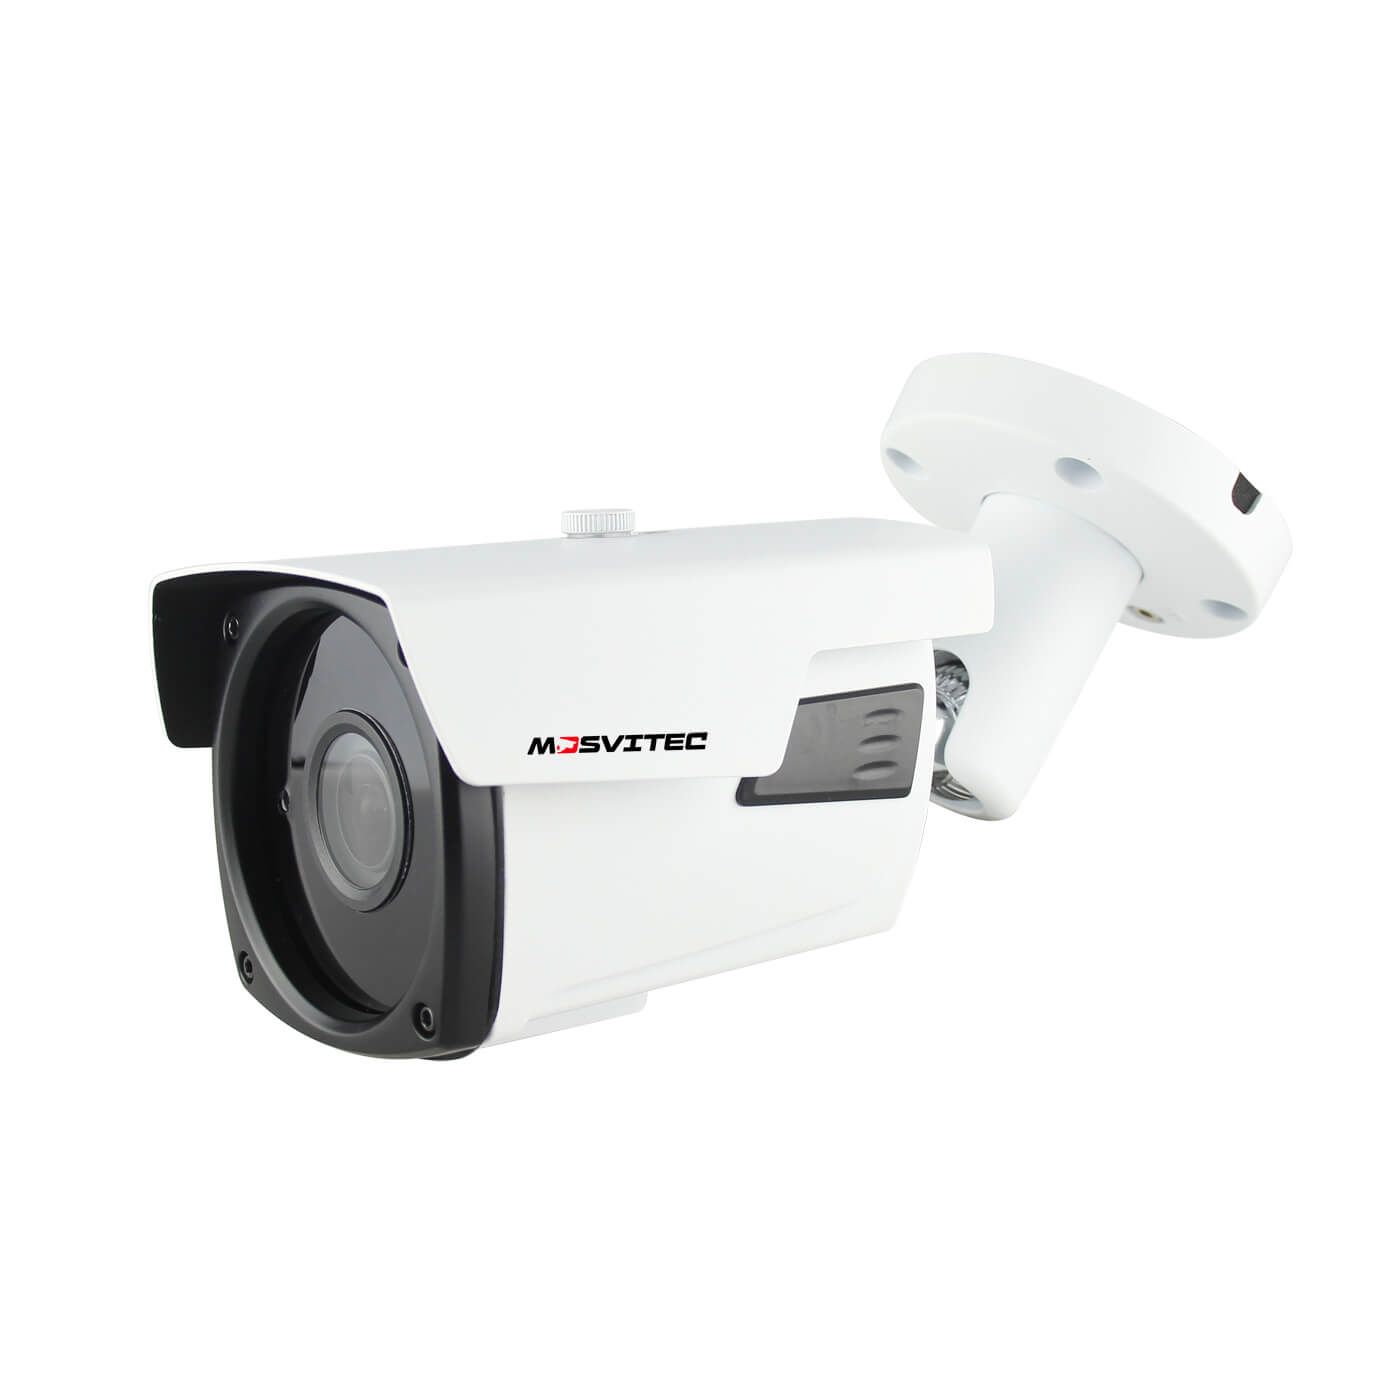 IP комплект видеонаблюдения на 5 камер 5 Мегапикселей PRO